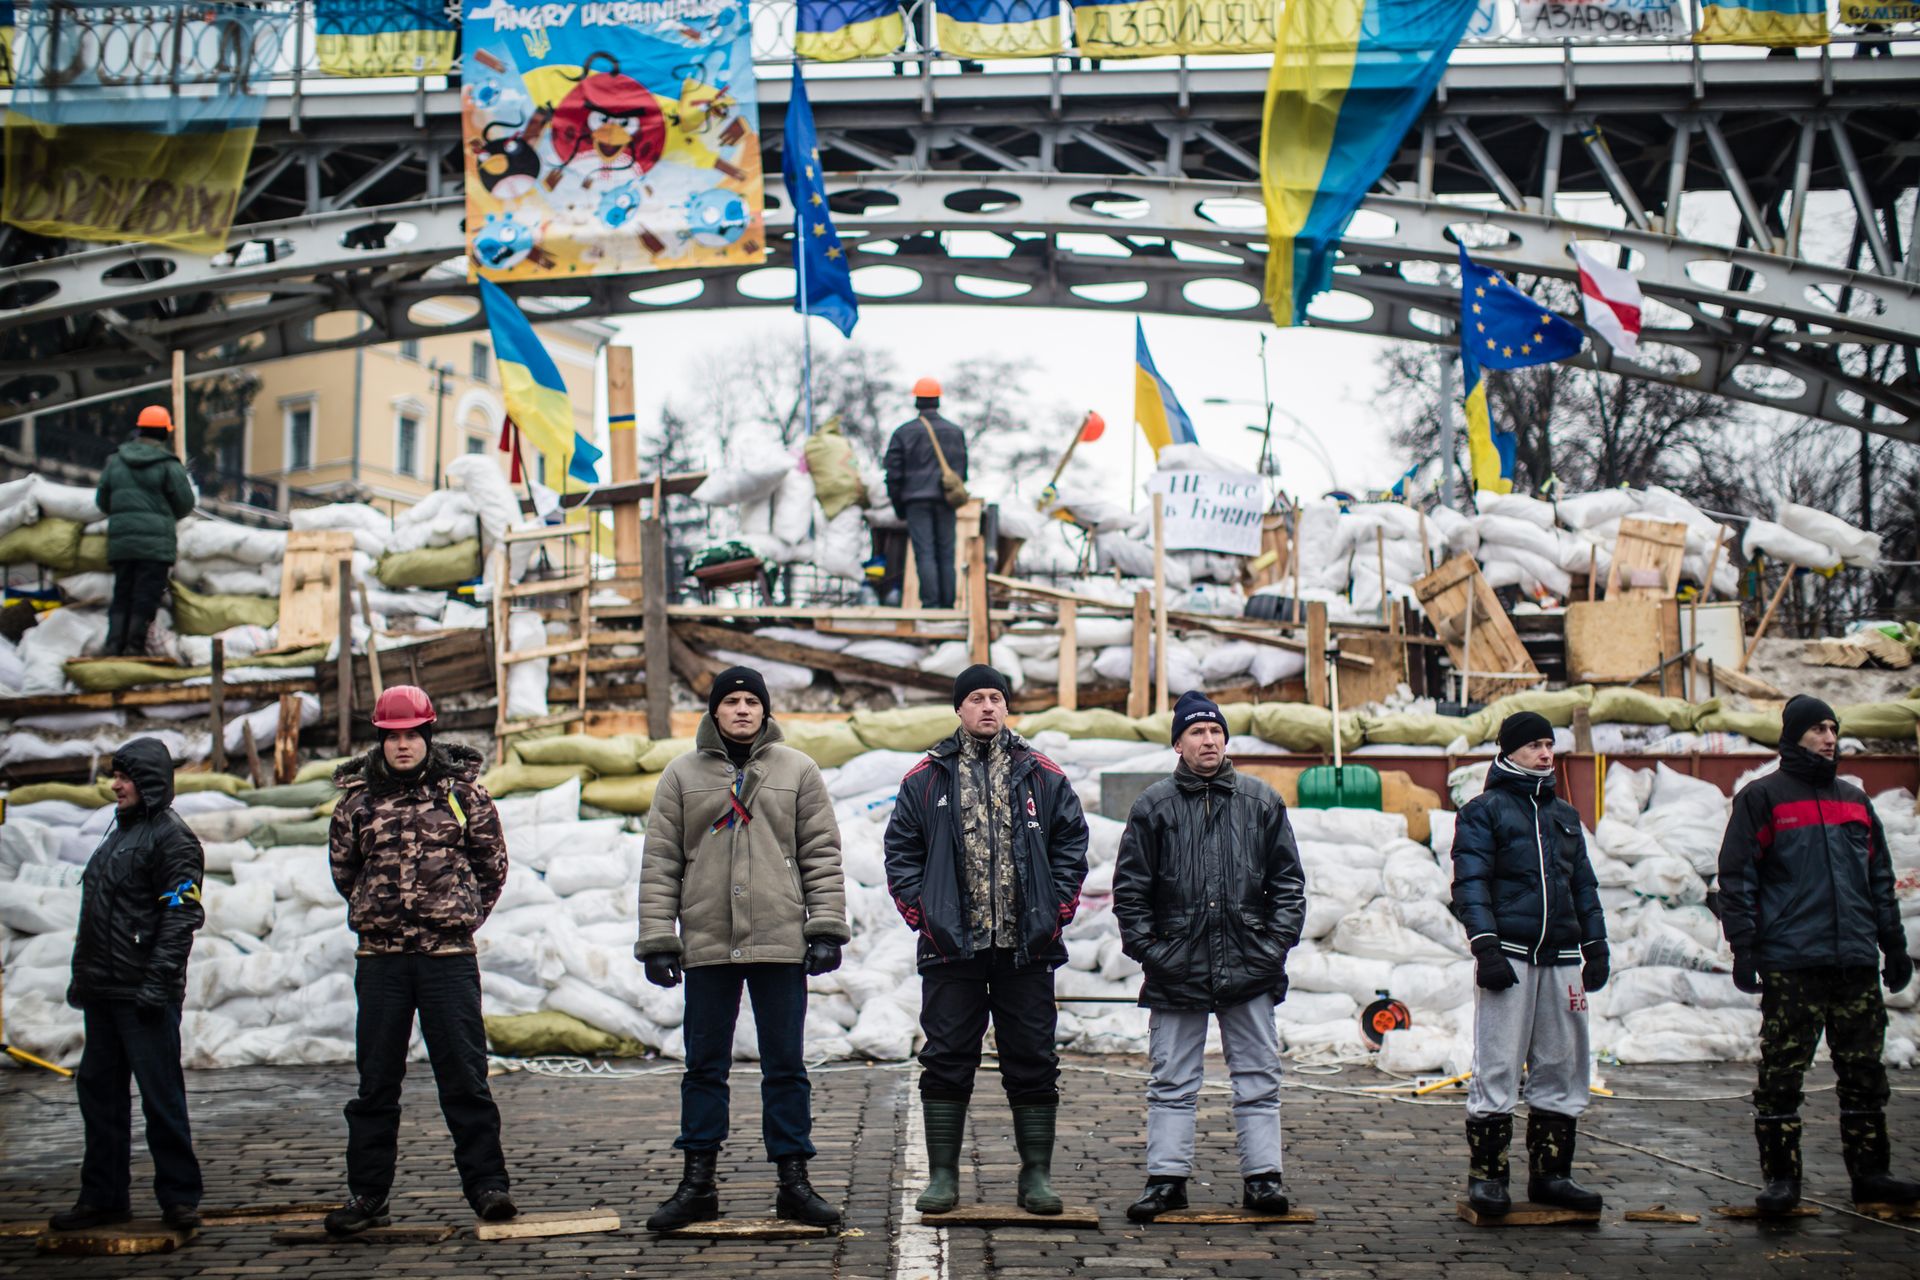 Des manifestants anti-gouvernementaux gardent une barricade destinée à empêcher la police de les expulser de la place de l’Indépendance, le 13 décembre 2013 à Kiev, en Ukraine. Des milliers de personnes protestent contre le gouvernement depuis la décision